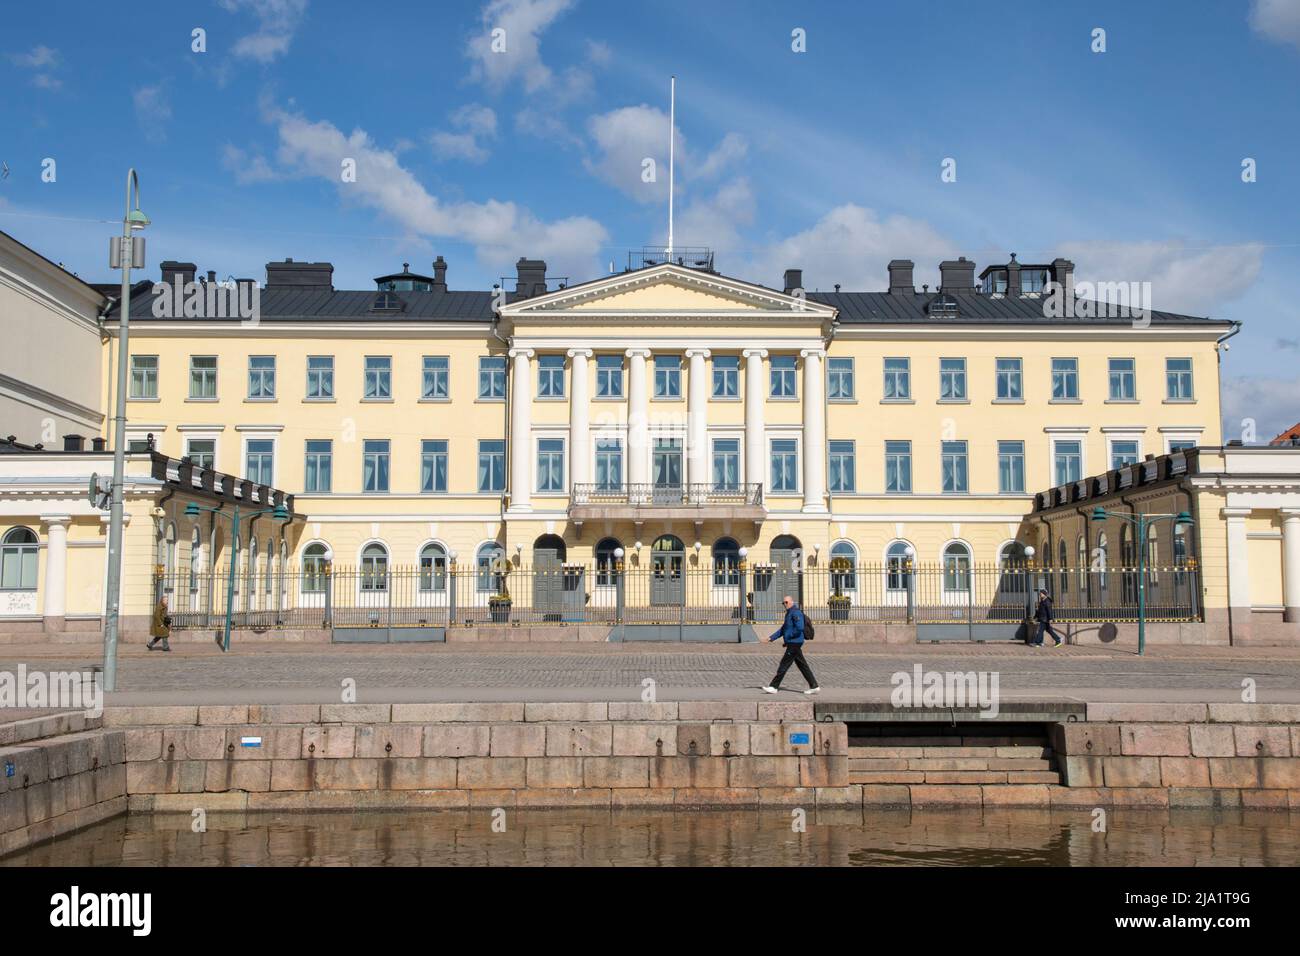 Le palais présidentiel d'Helsinki, en Finlande Banque D'Images